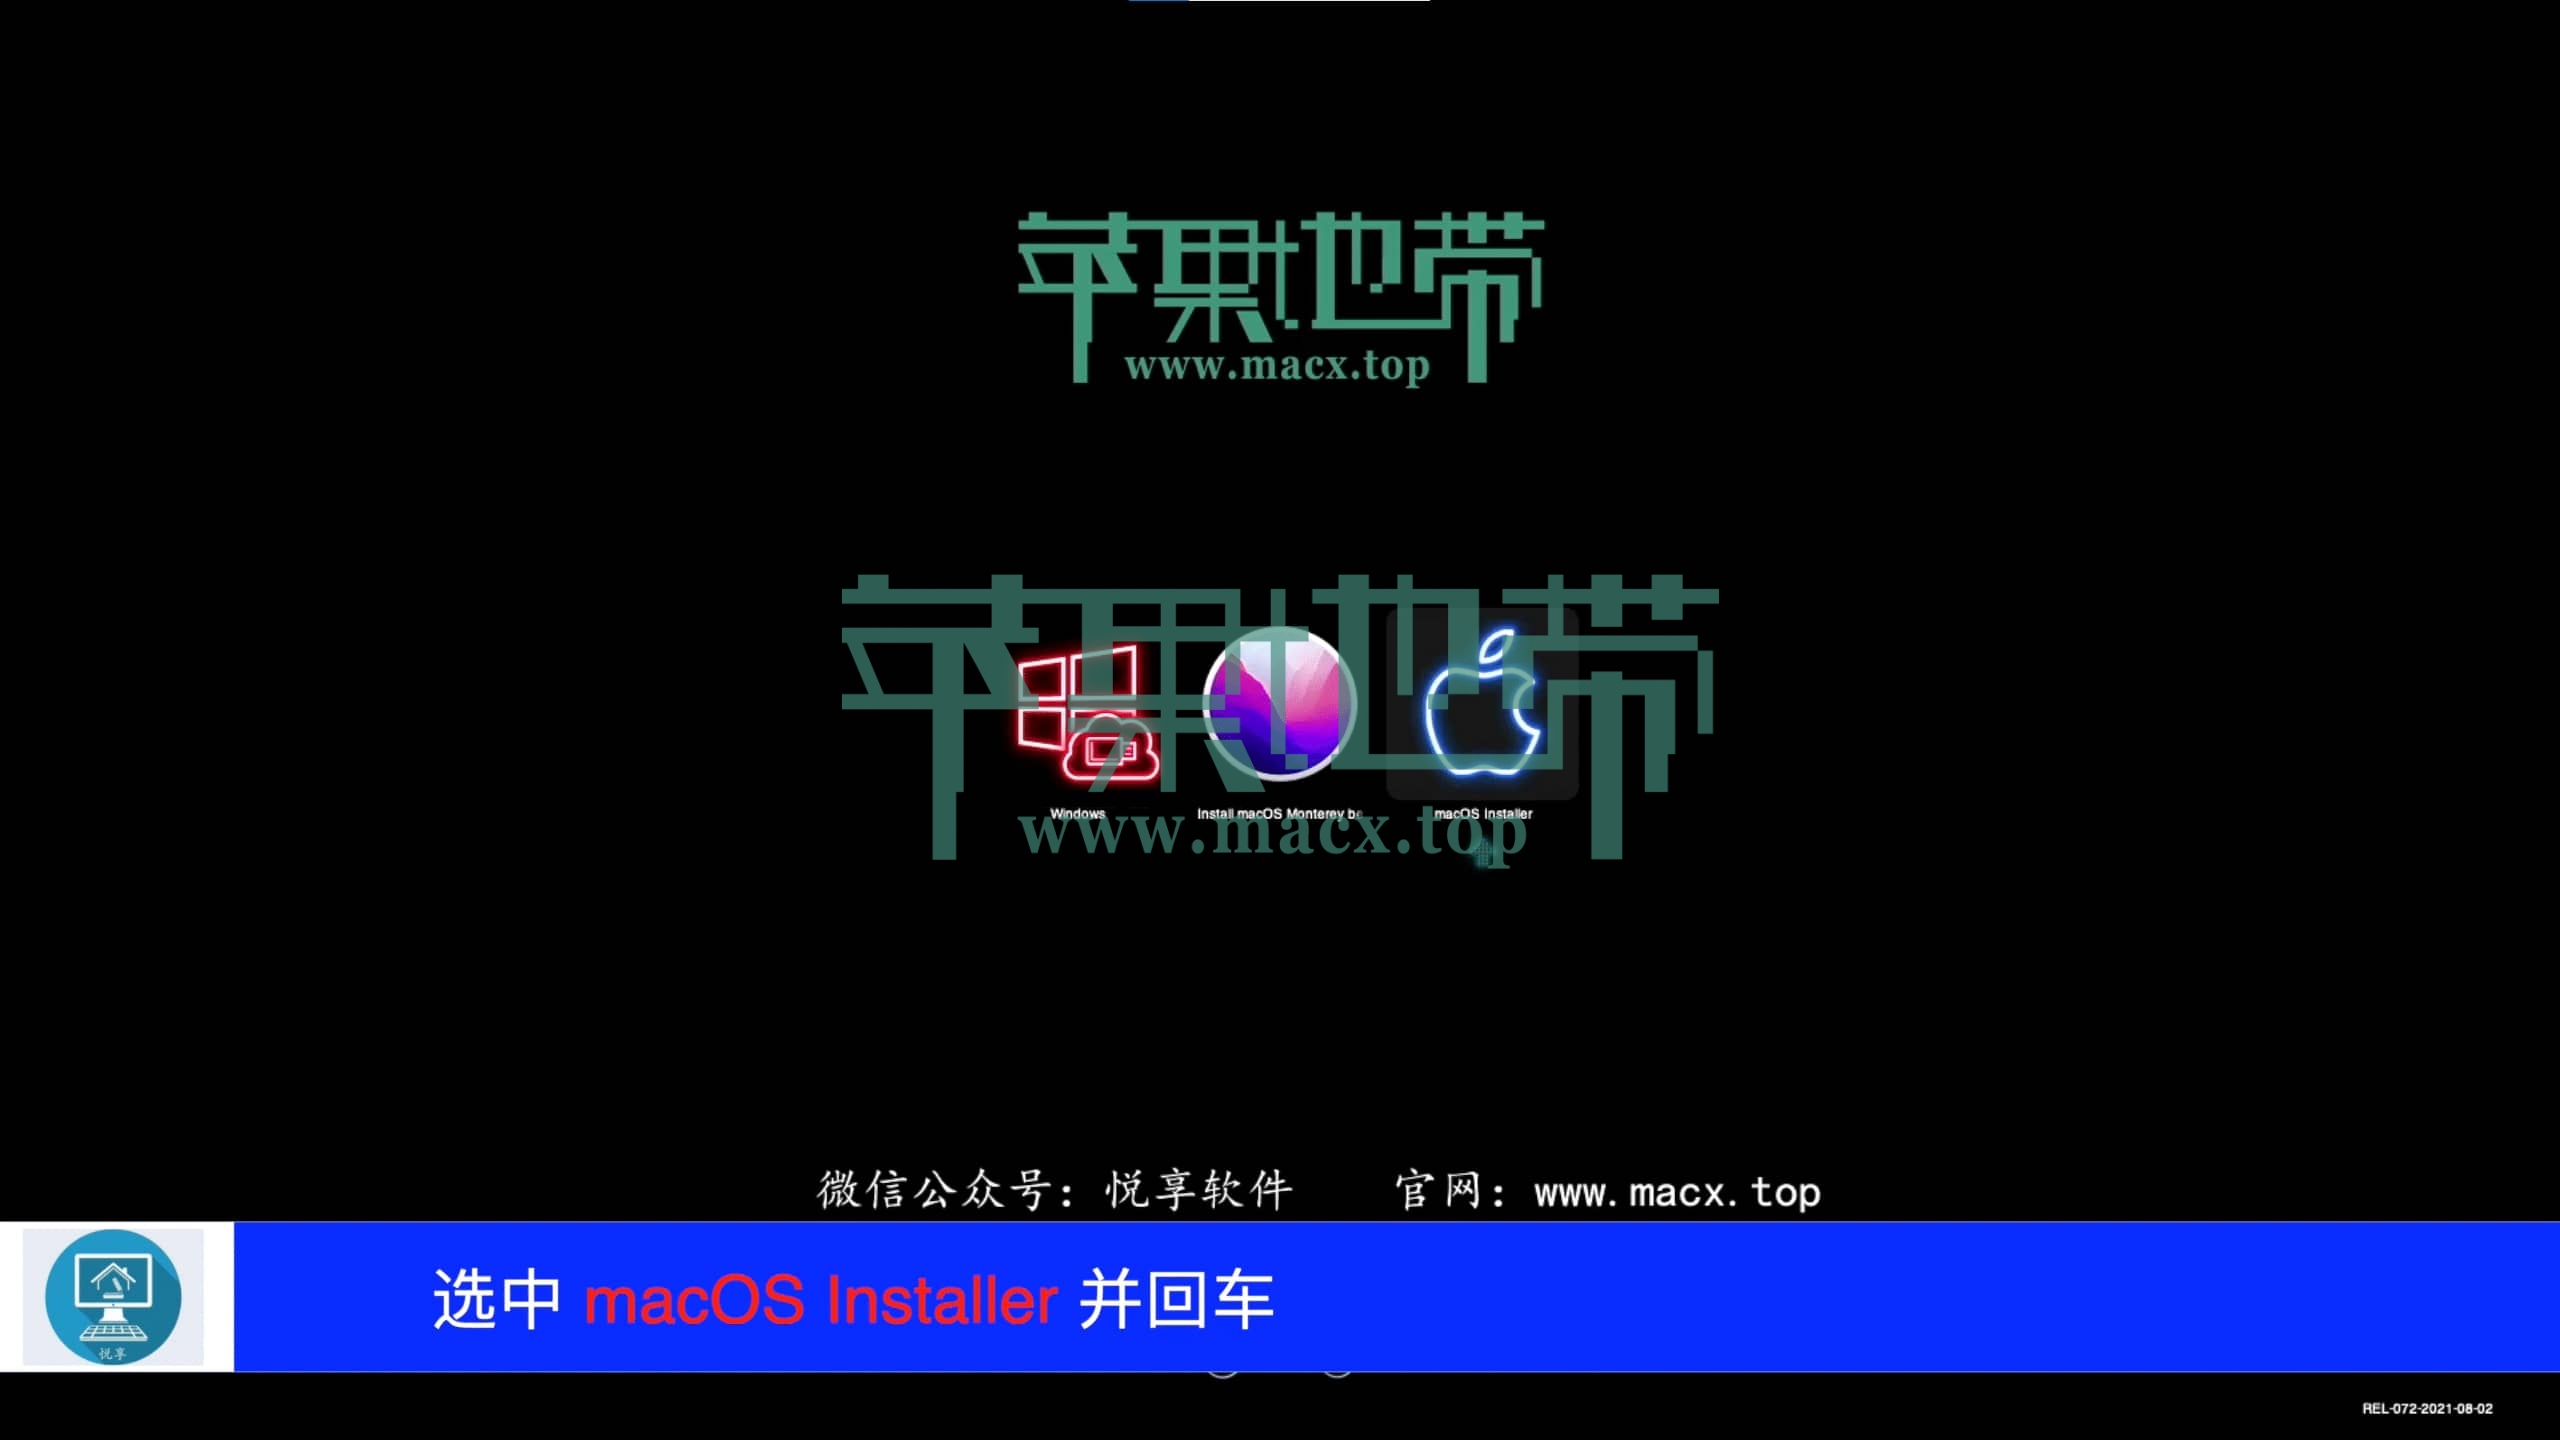 【黑苹果】macOS 12 Monterey 原版 OC 引导安装教程插图46